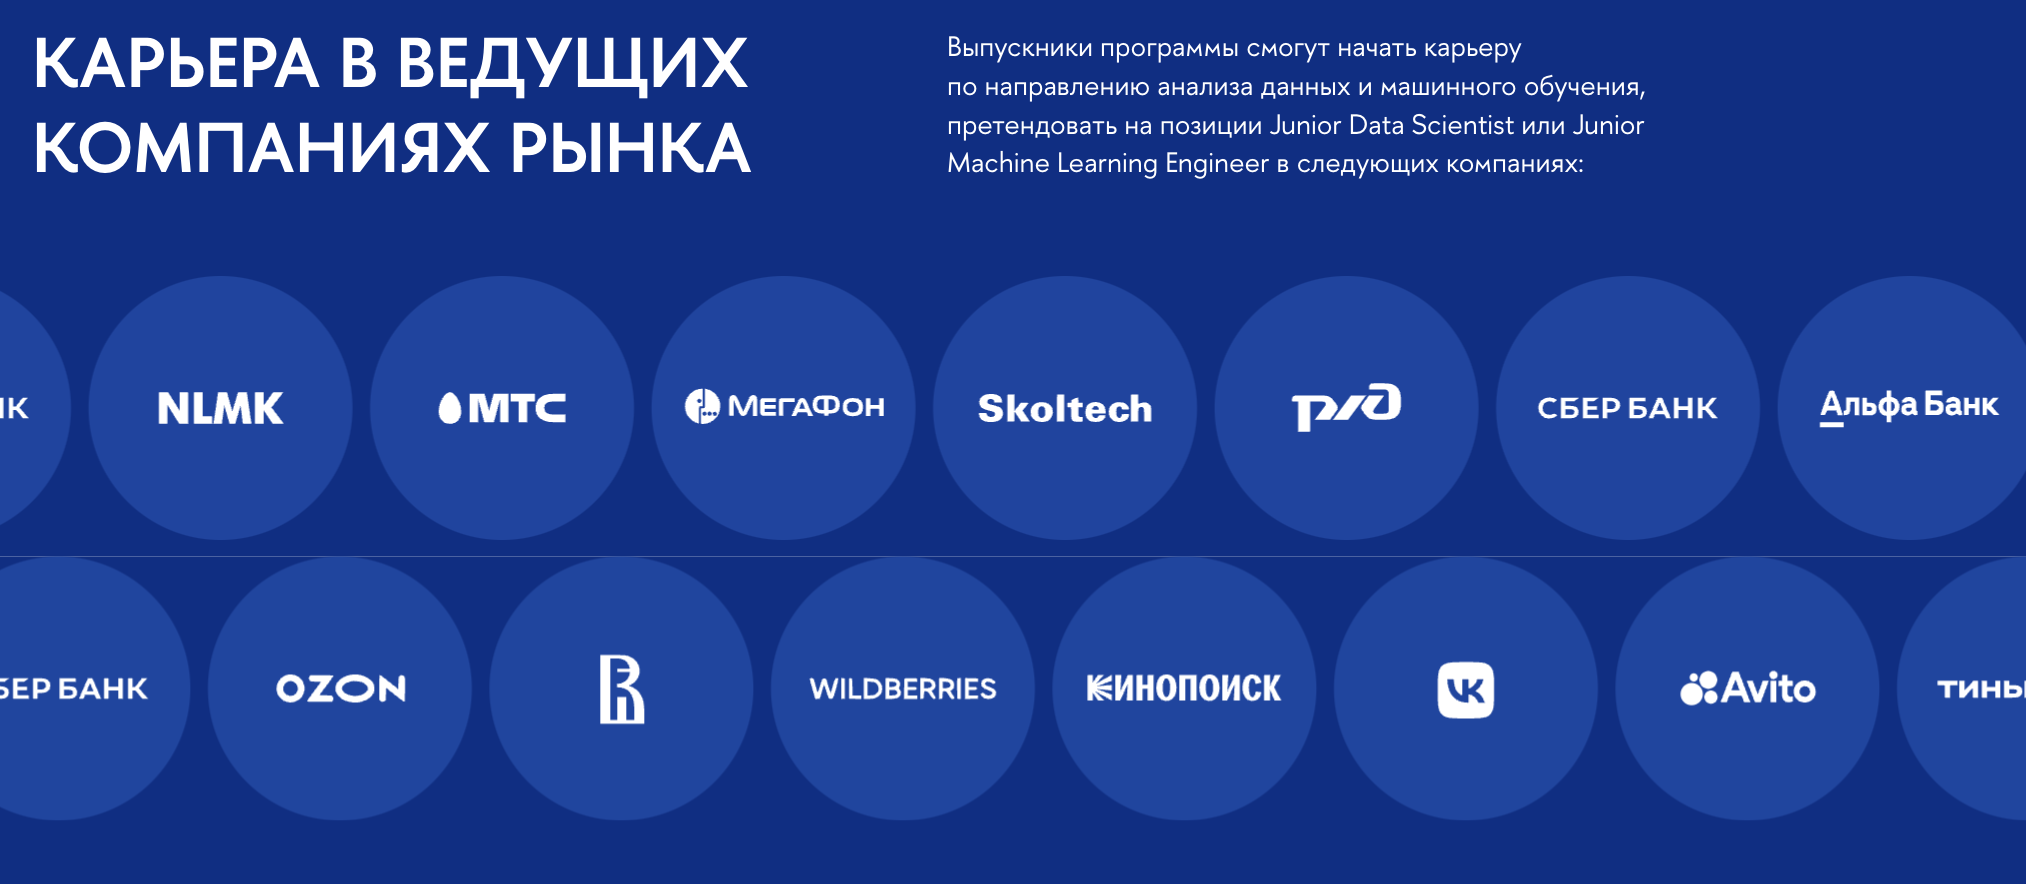 Компании, где есть вакансии для специалистов Data Science. Источник: hse.ru